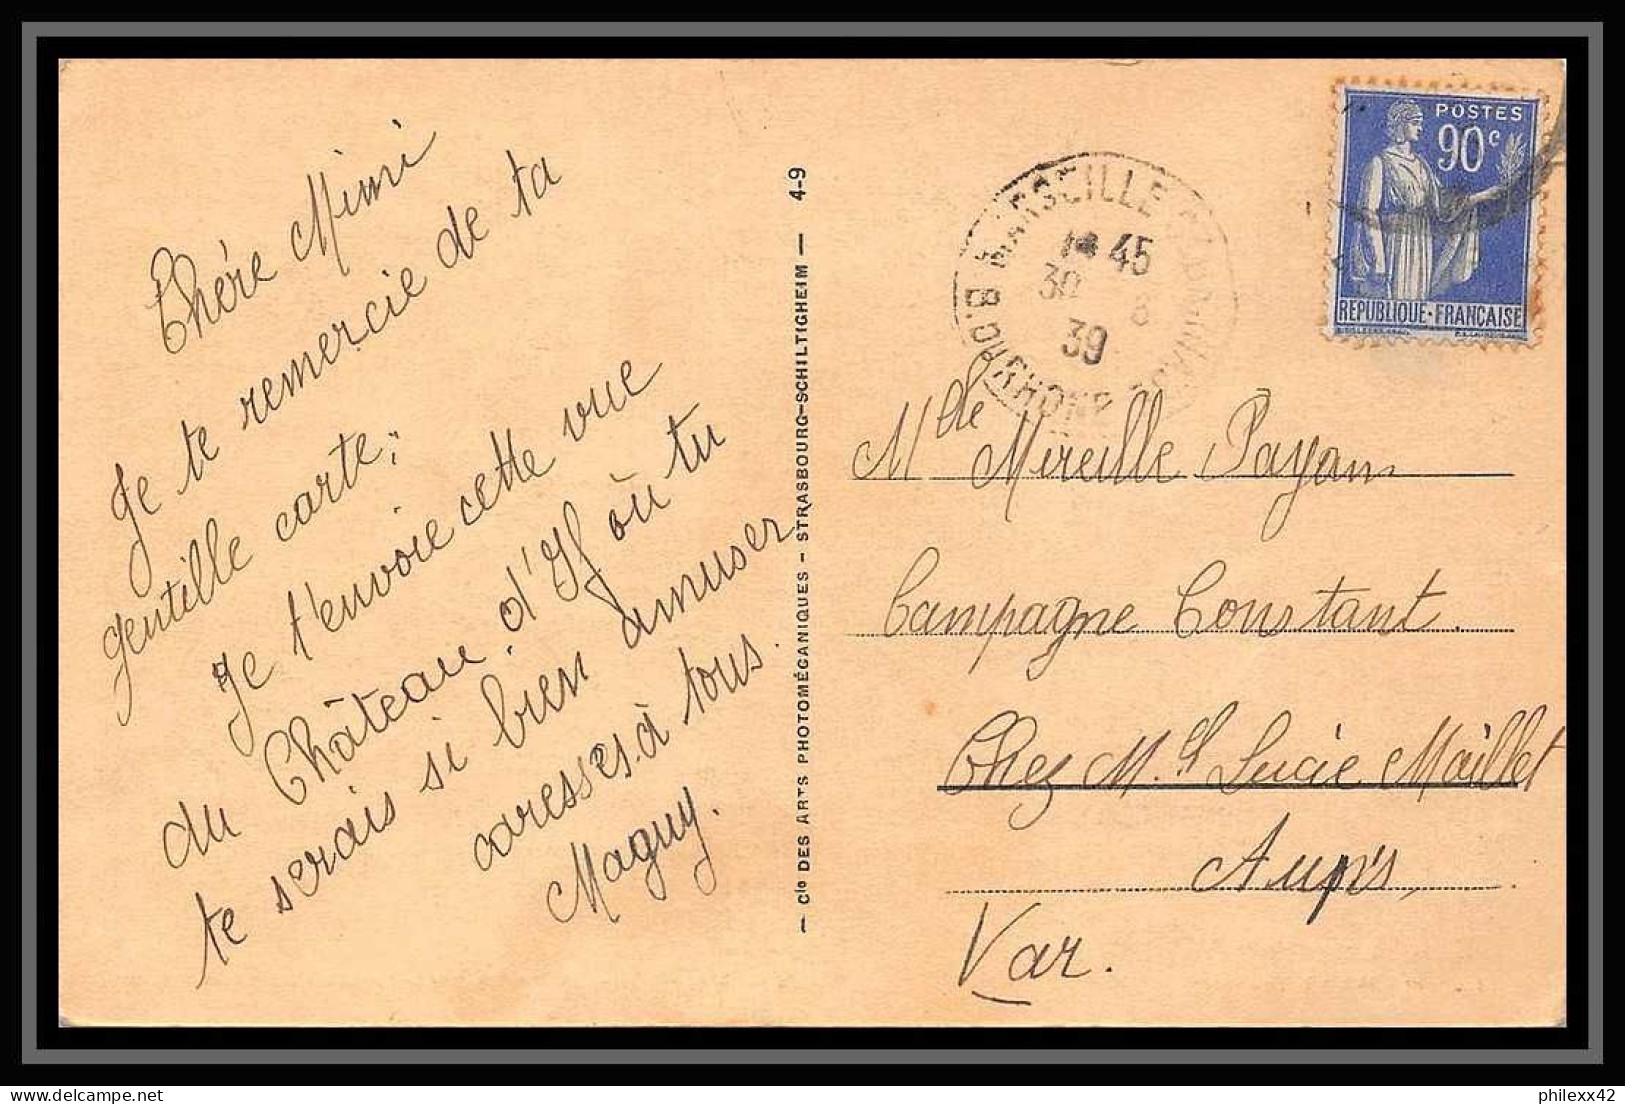 110874 lot de 8 Lettres Bouches du rhone Marseille saint barnabé 